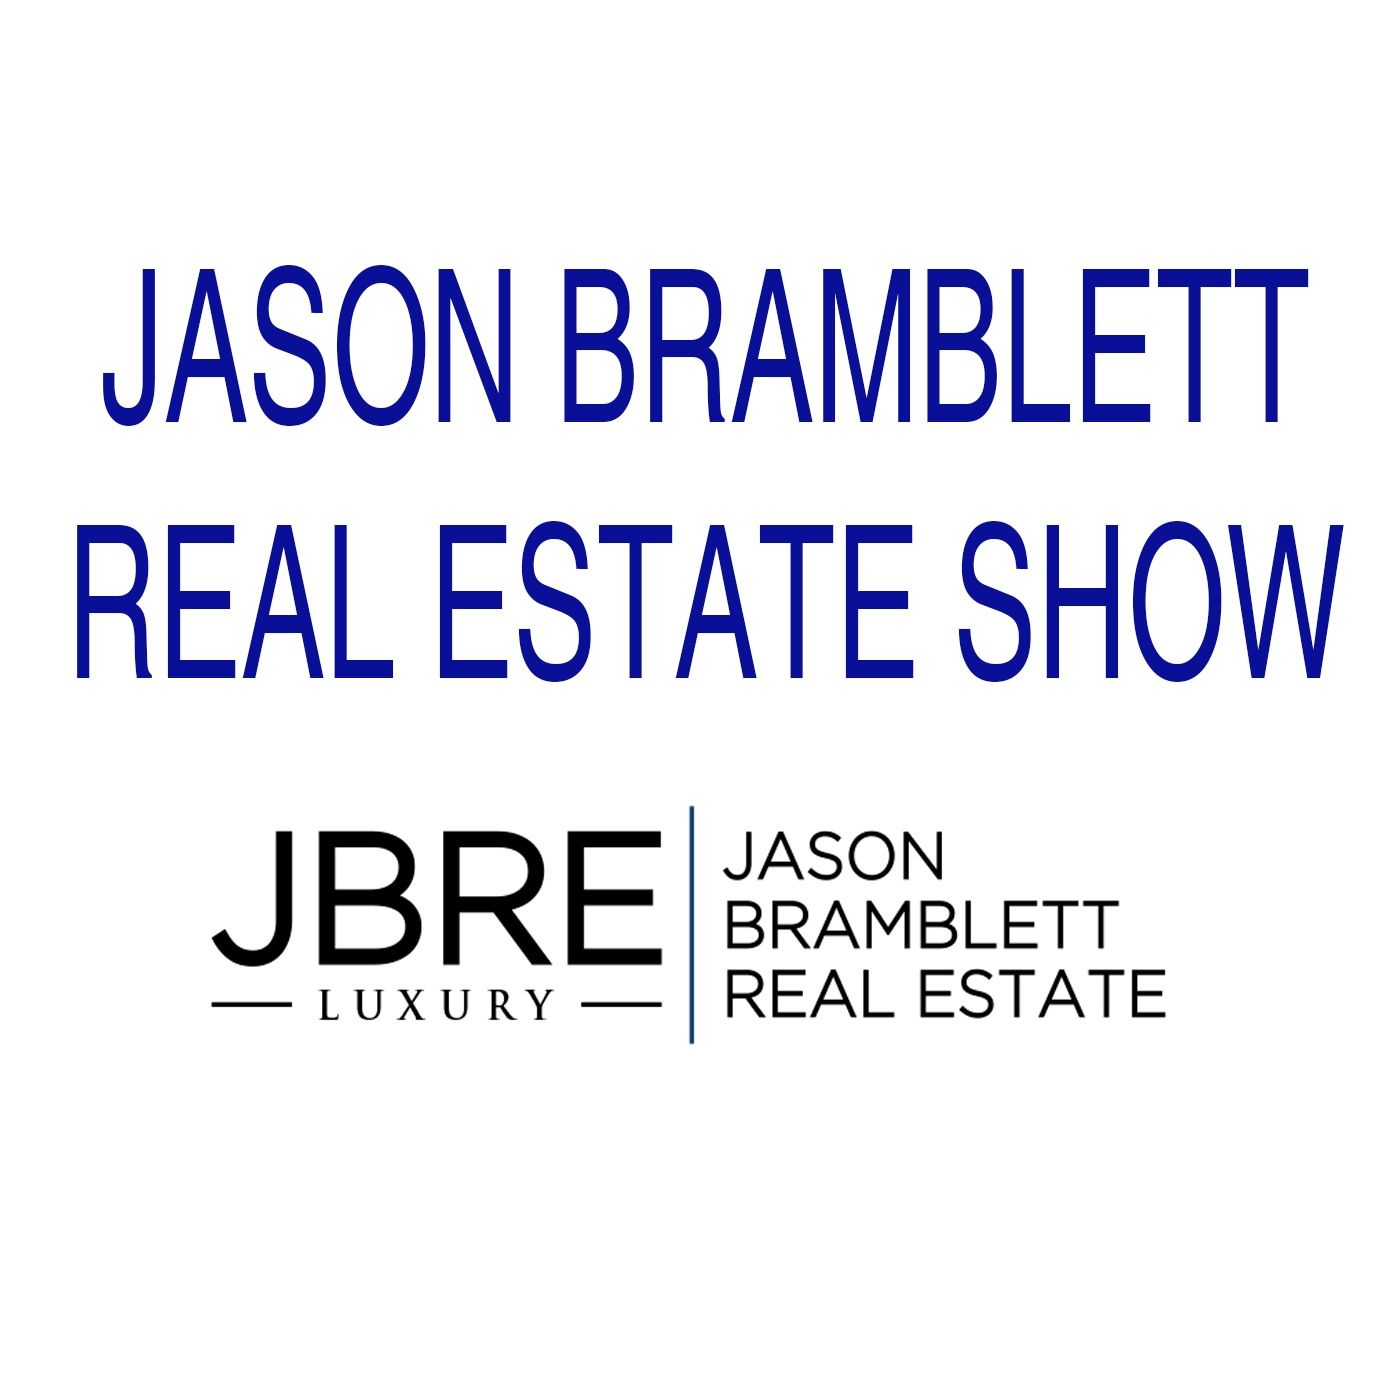 Jason Bramblett Real Estate Show 9/14/2019